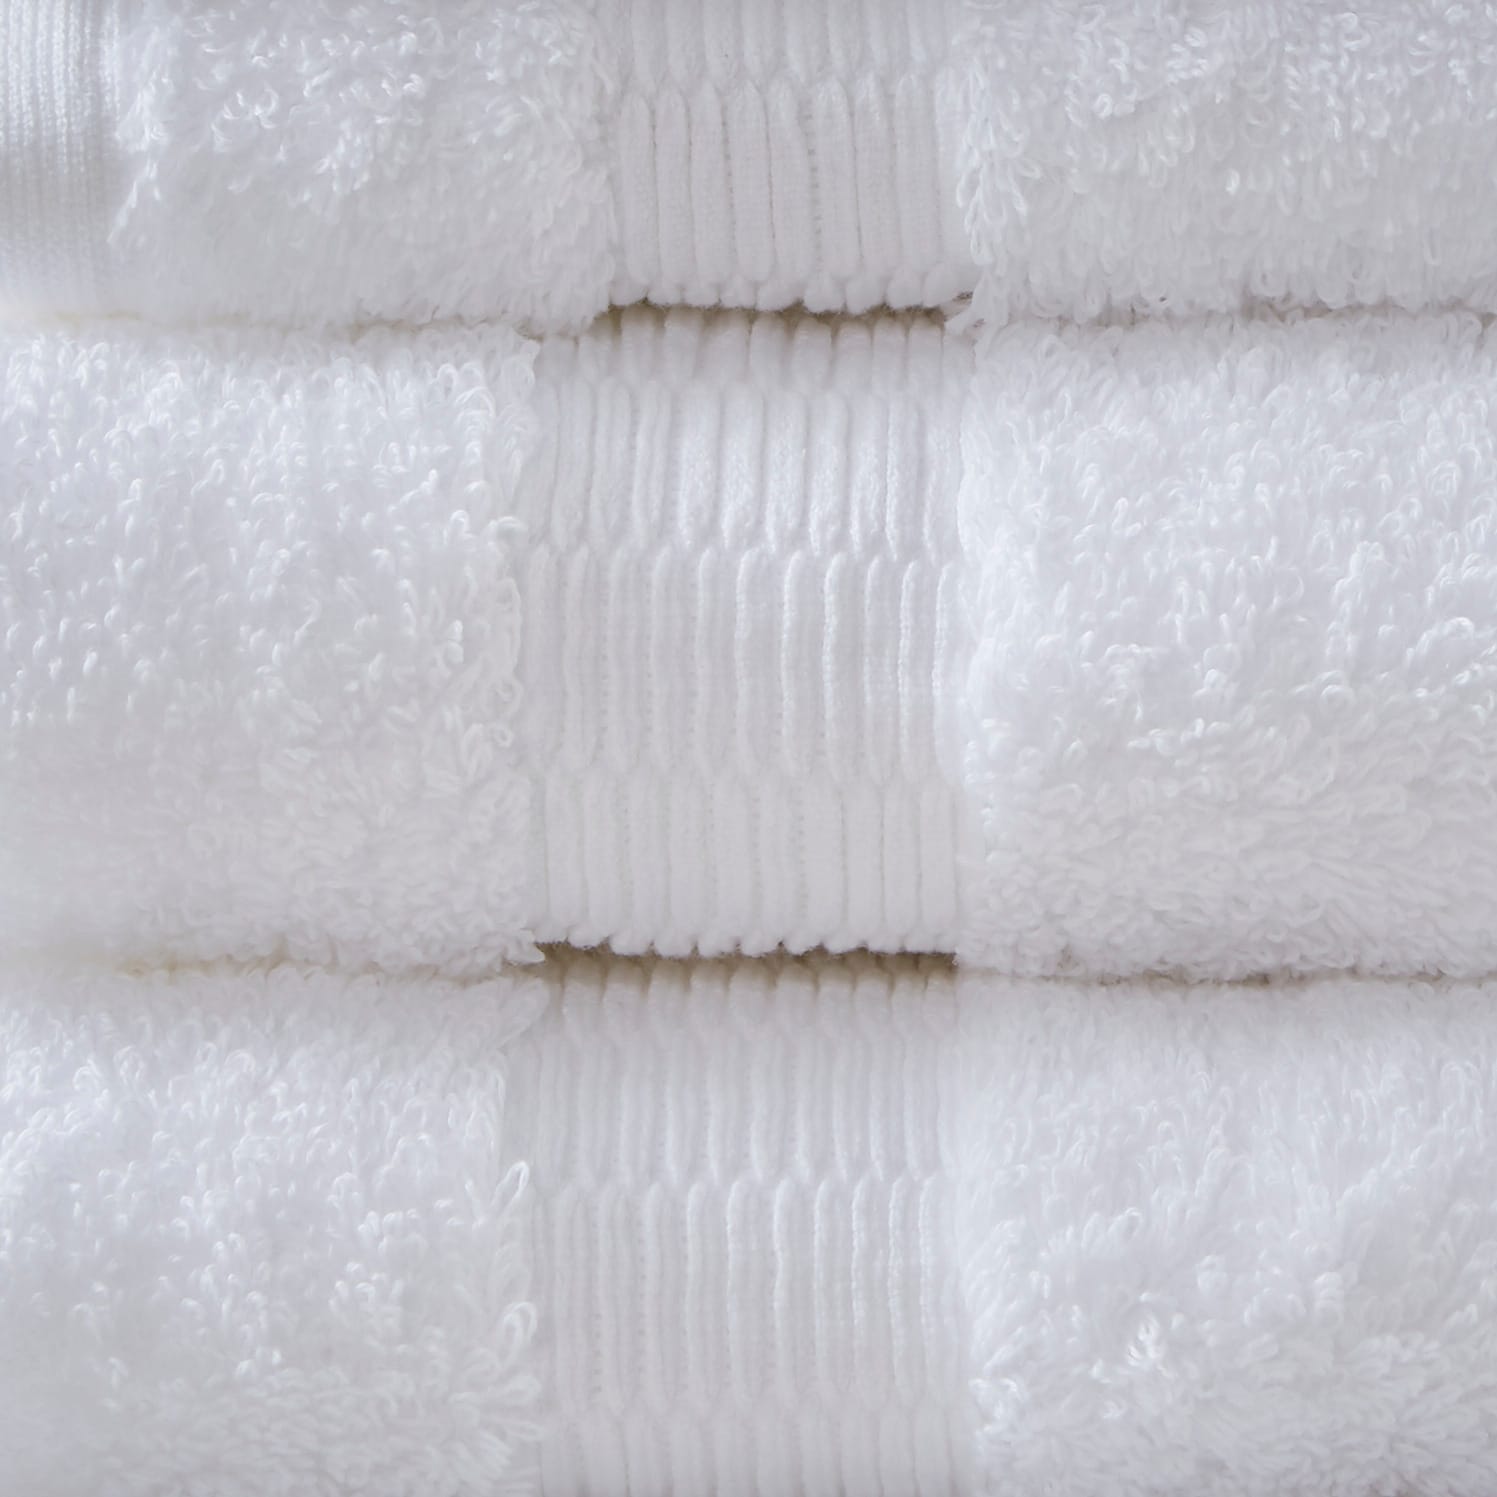 Madison Park Signature Splendor 1000gsm 100-percent Cotton 6 Piece Towel  Set - On Sale - Bed Bath & Beyond - 28019615